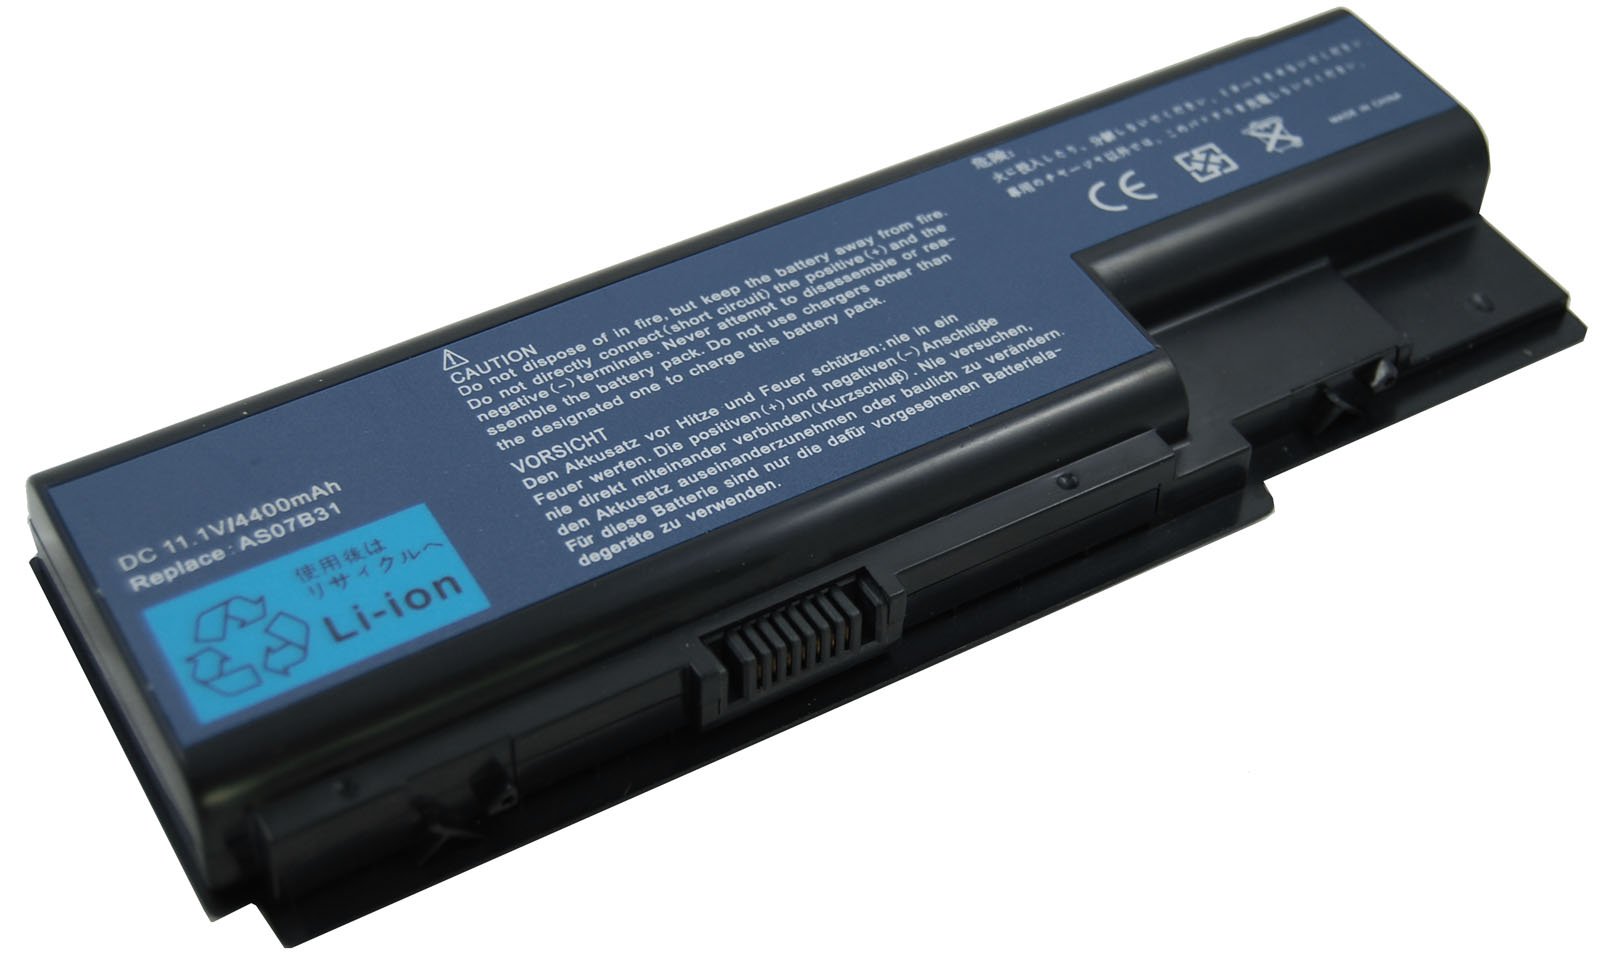 Lenovo Laptop battery repair/replacement